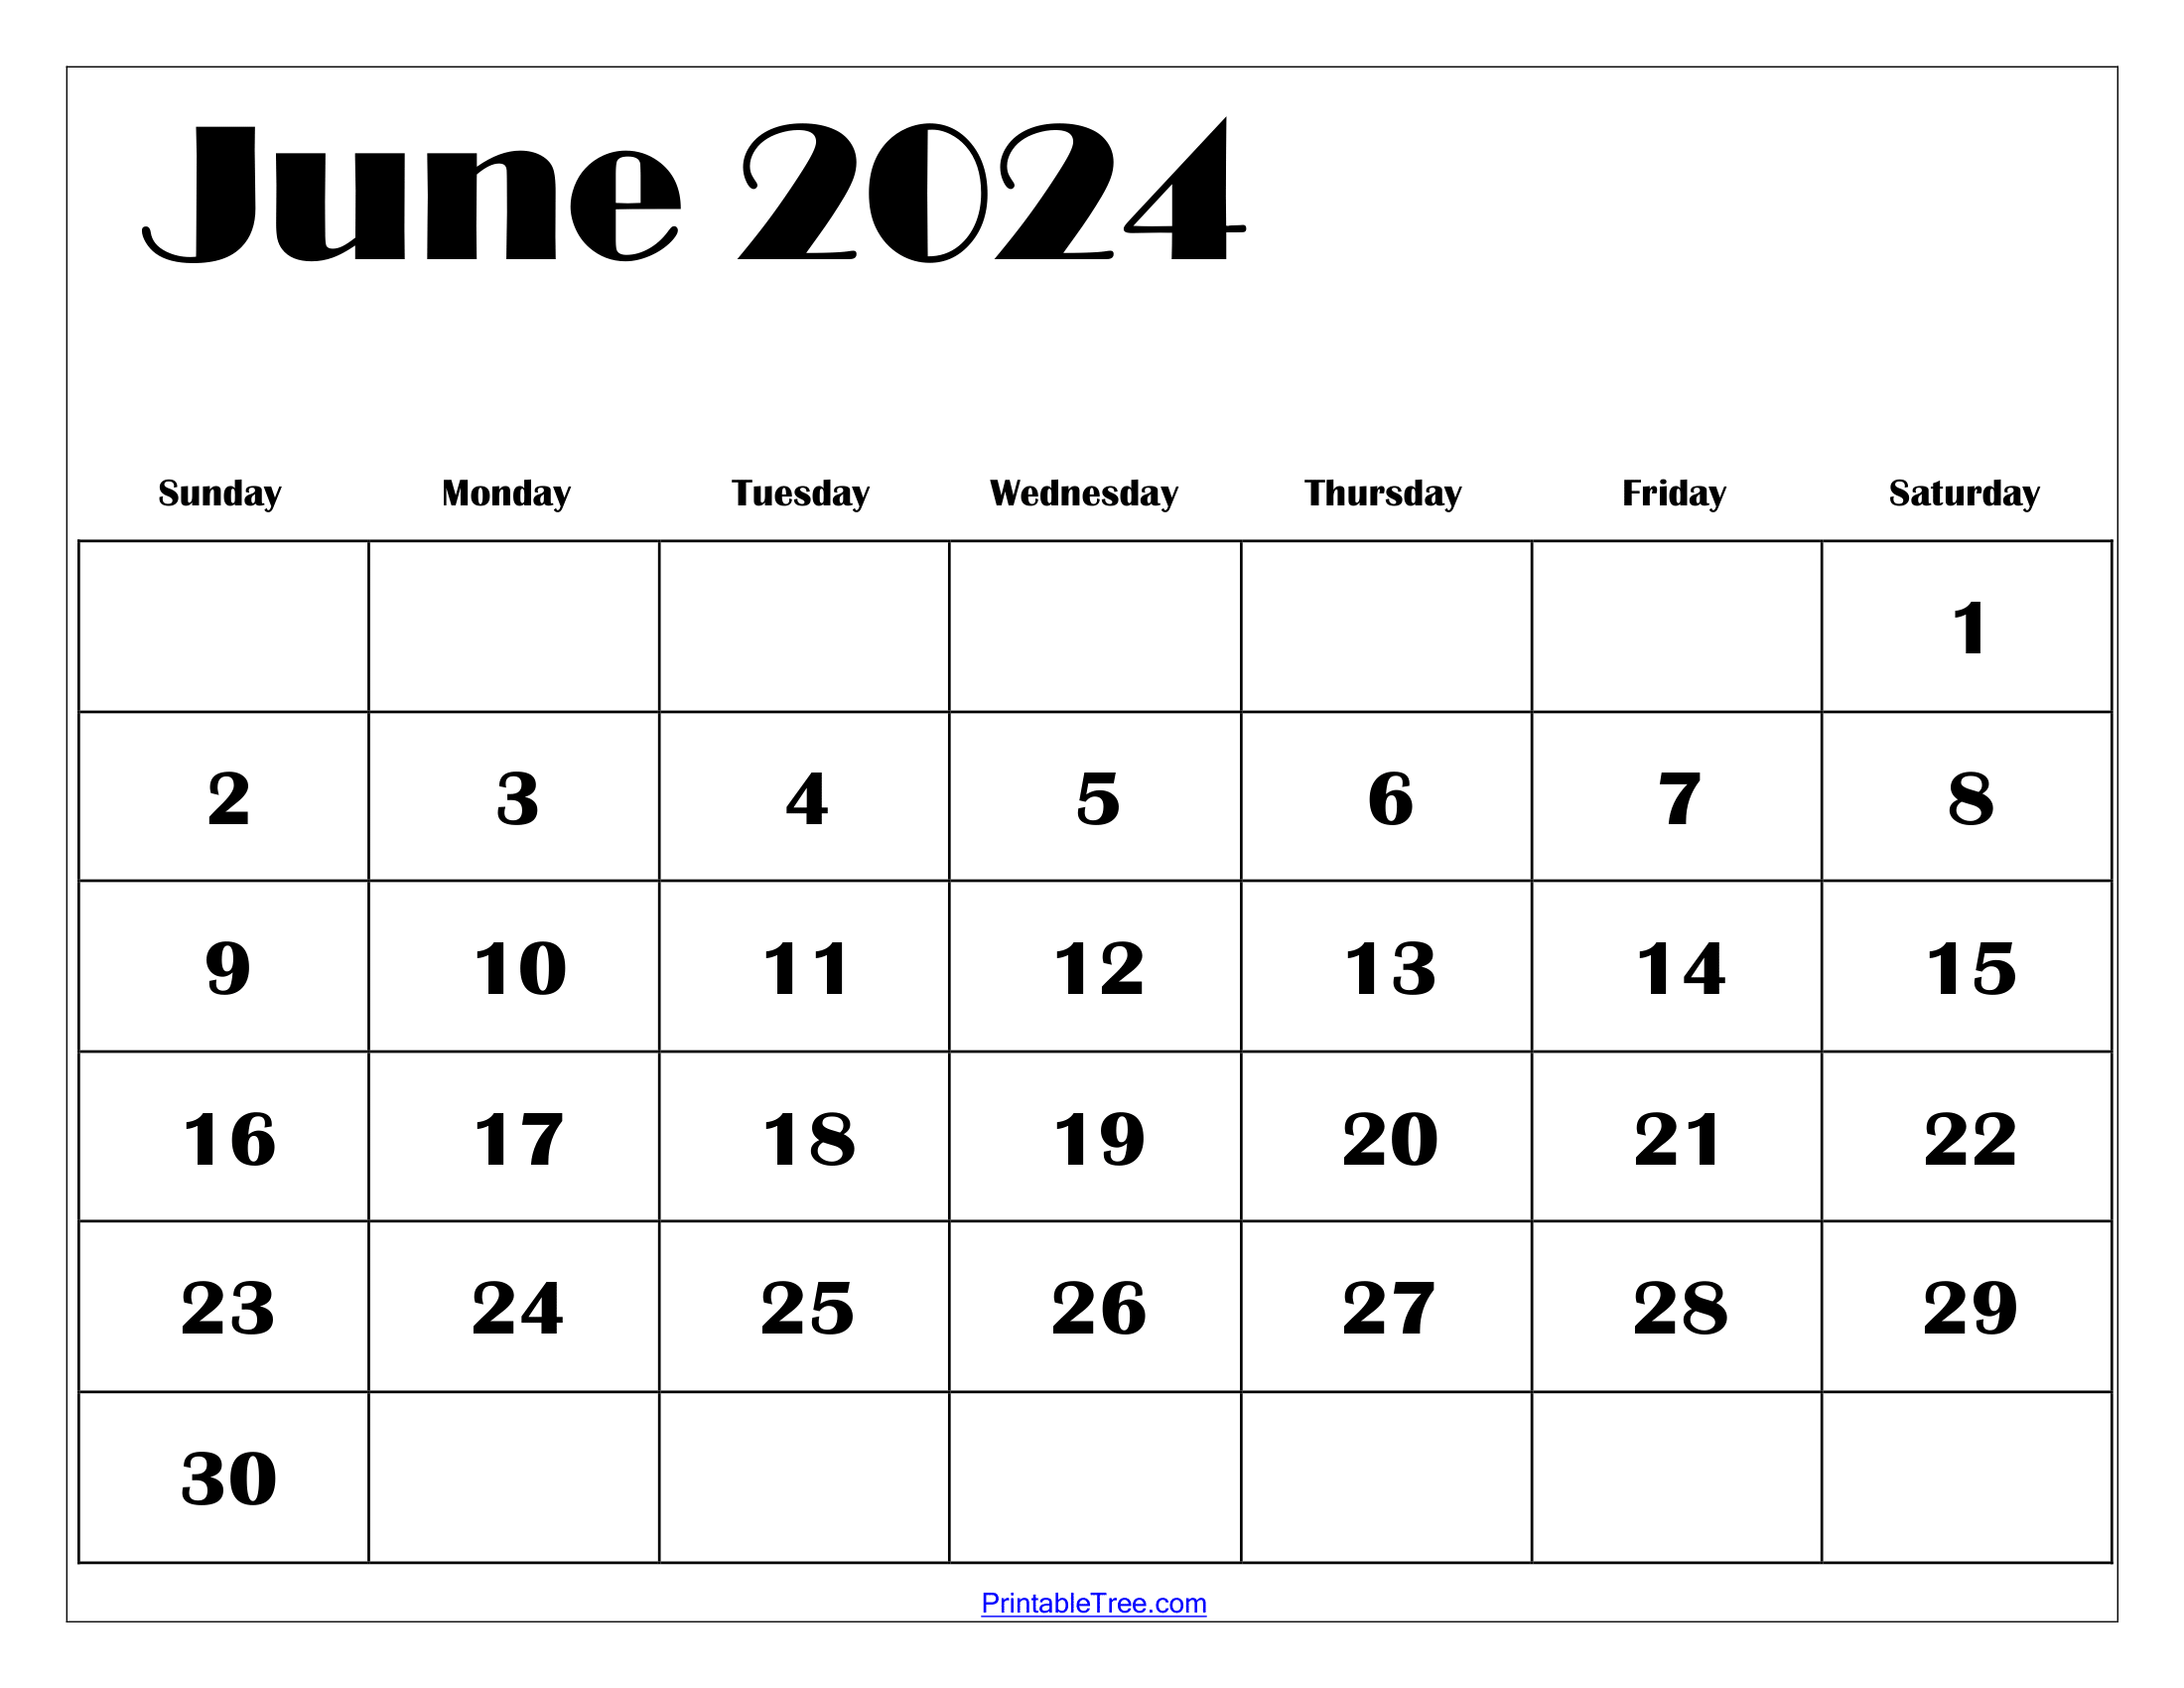 Tamil Calendar 2024 June 22 Printable Disney Crowd Calendar 2024 - Free Printable 2024 Monthly Calendar June